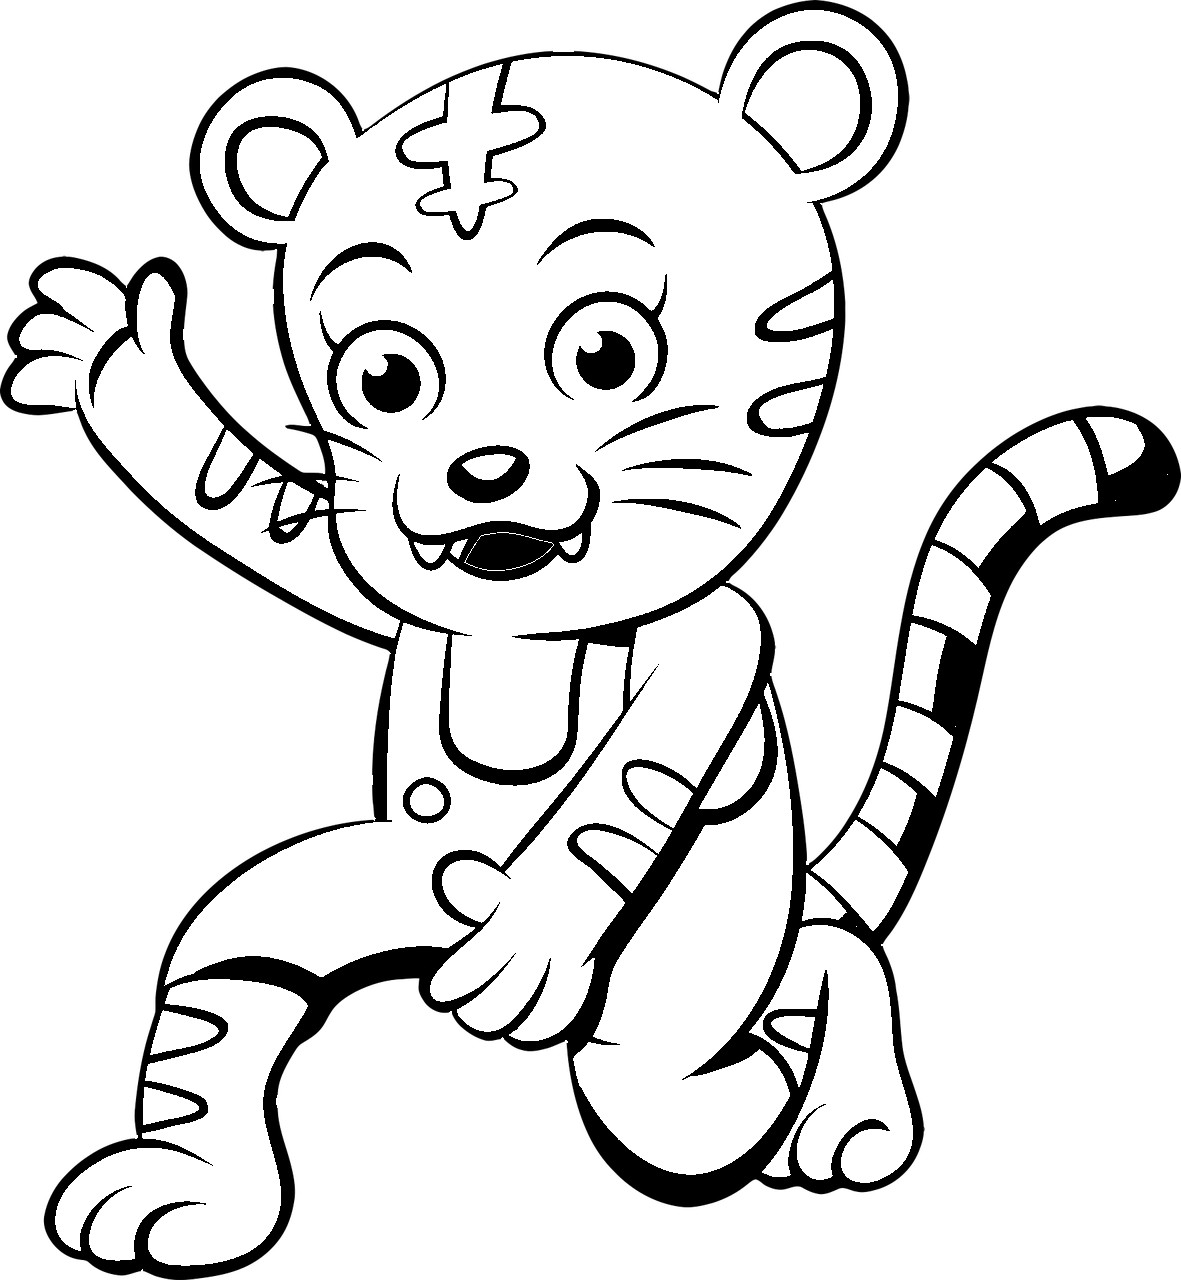 Disegno da colorare di ghepardo stile cartone animati per bambini